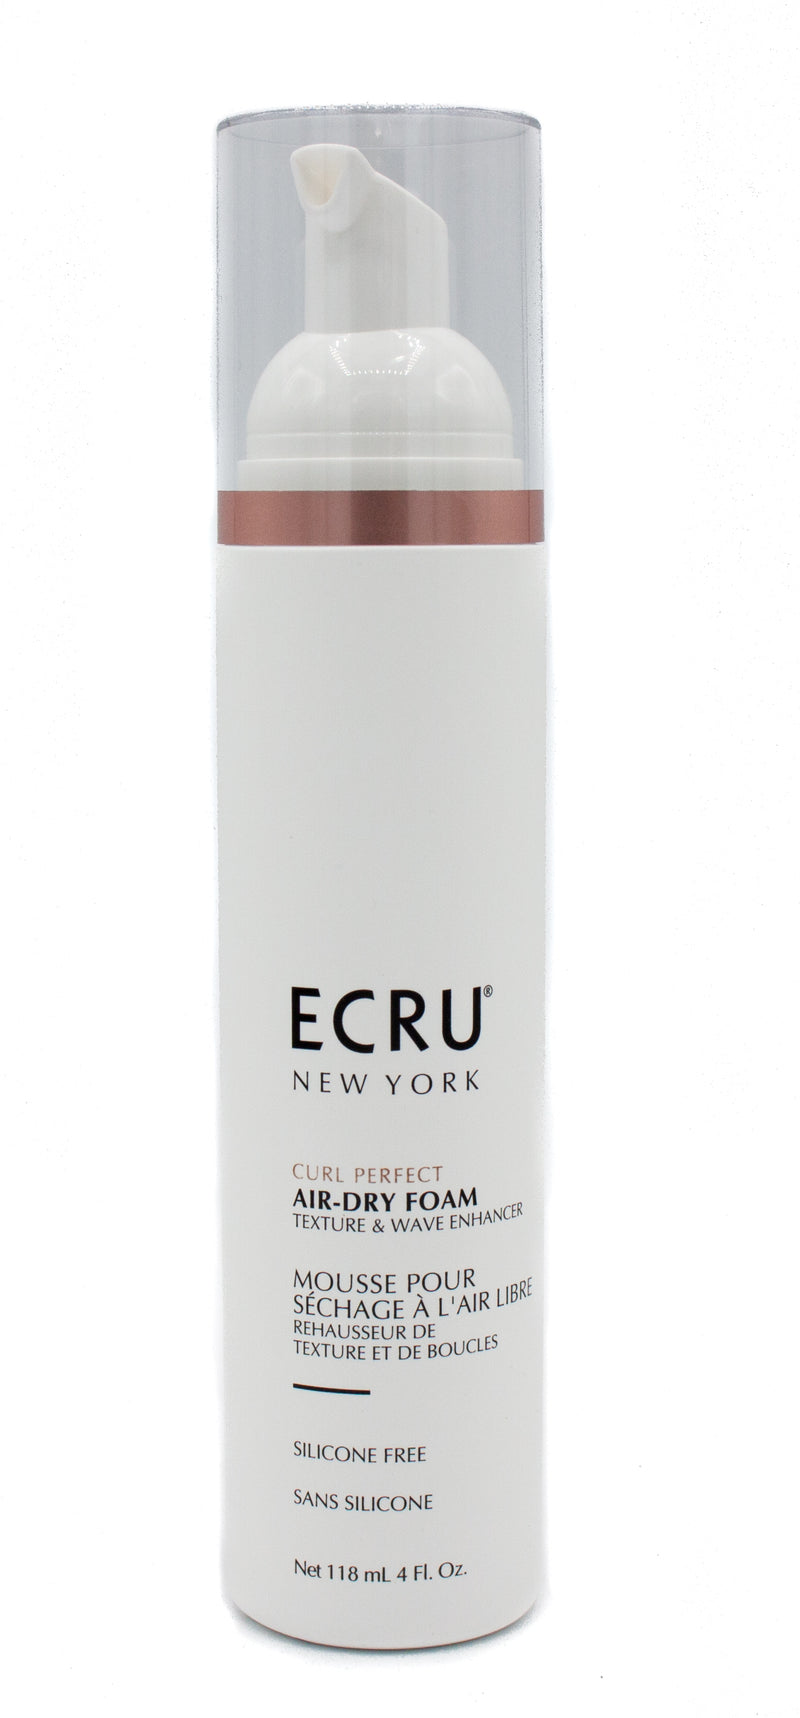 Ecru New York Curl Perfect Air-Dry Foam